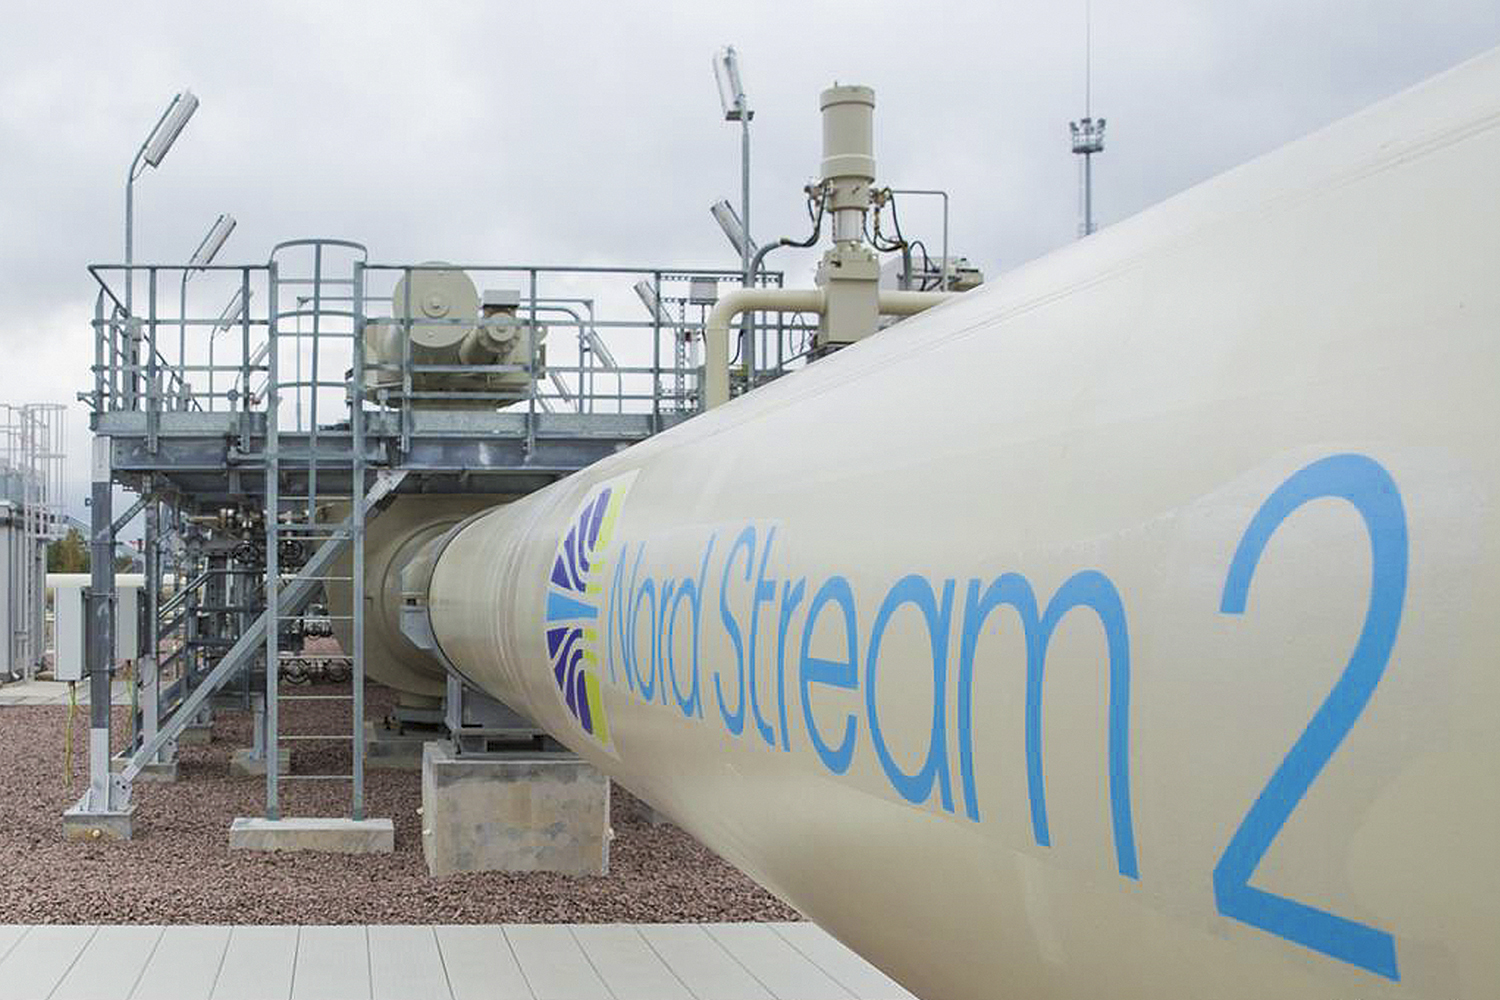 PARADO - Nord Stream 2: por causa da crise, a Alemanha adiou a operação do novo gasoduto de ligação com a Rússia -